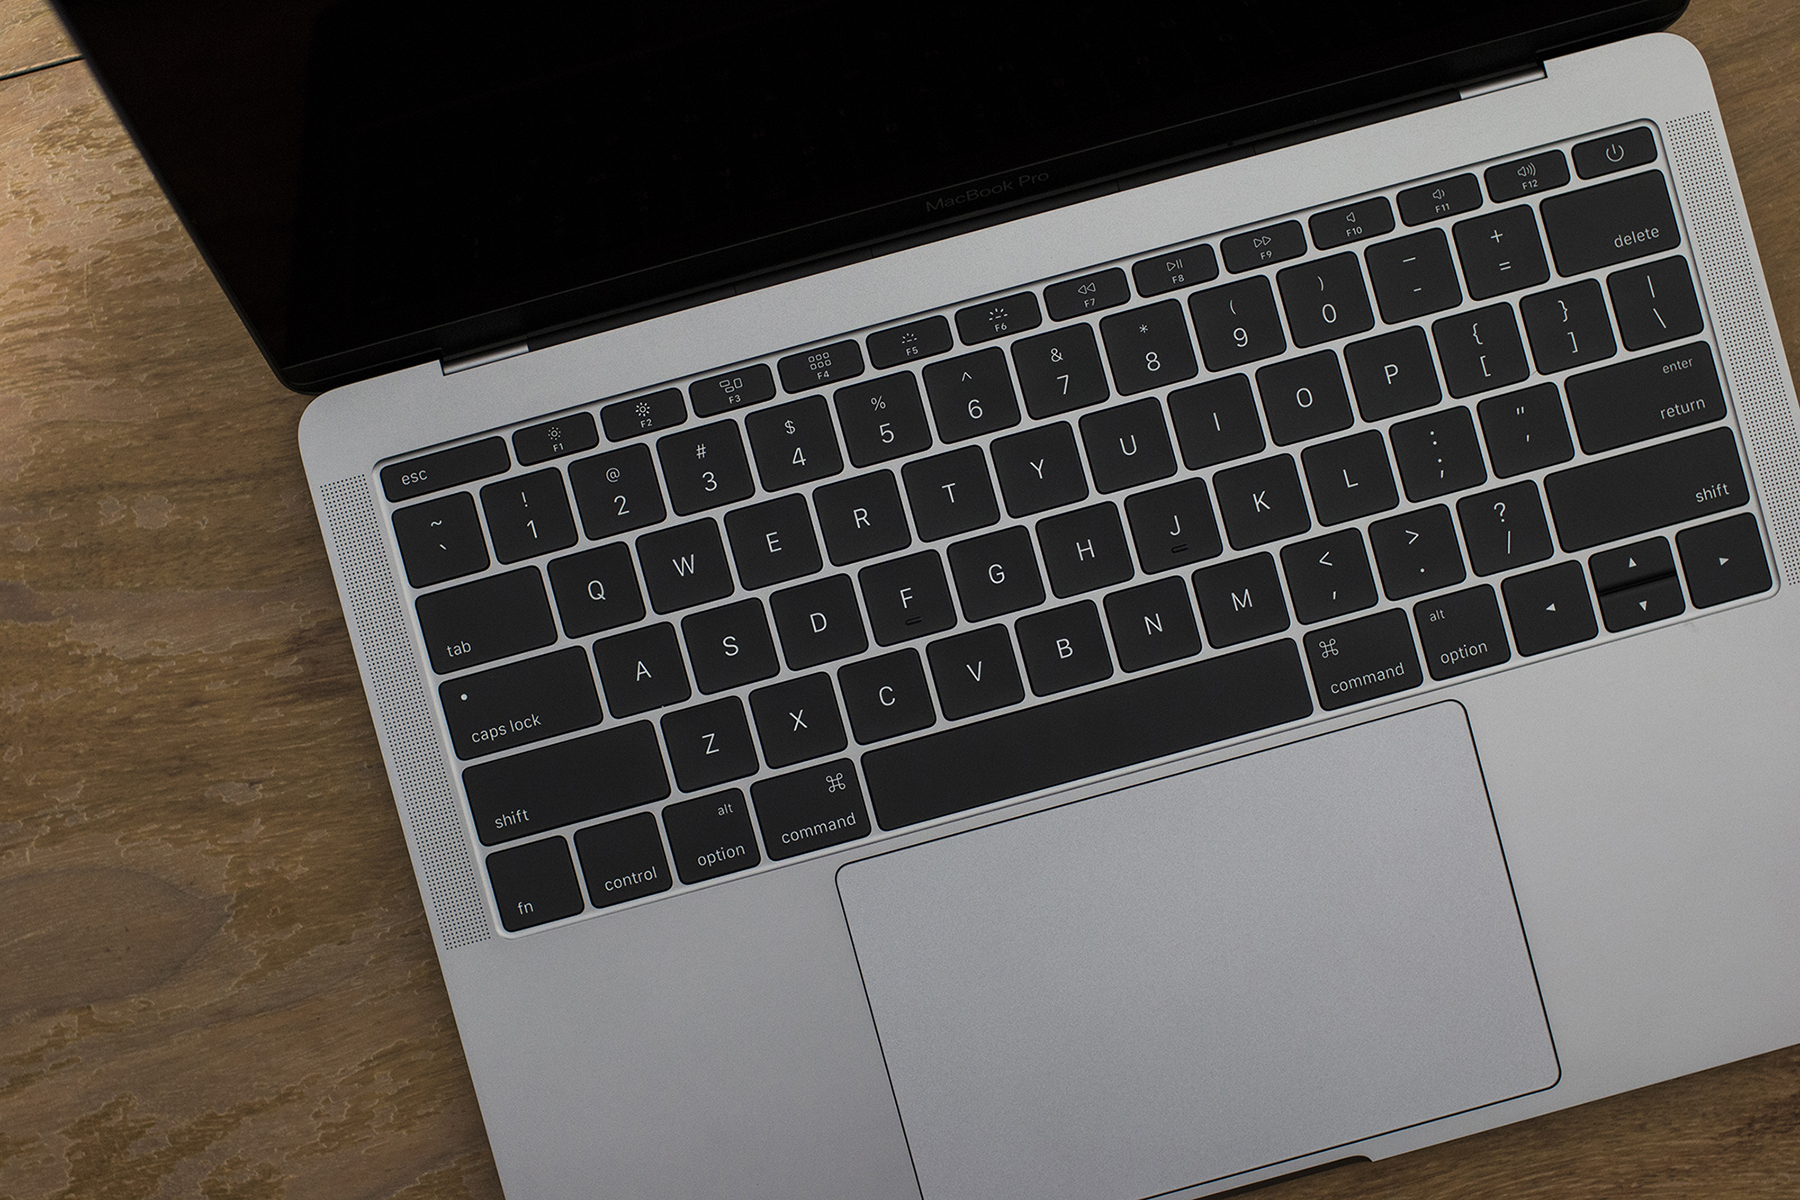 2016 MacBook Pro's keyboard